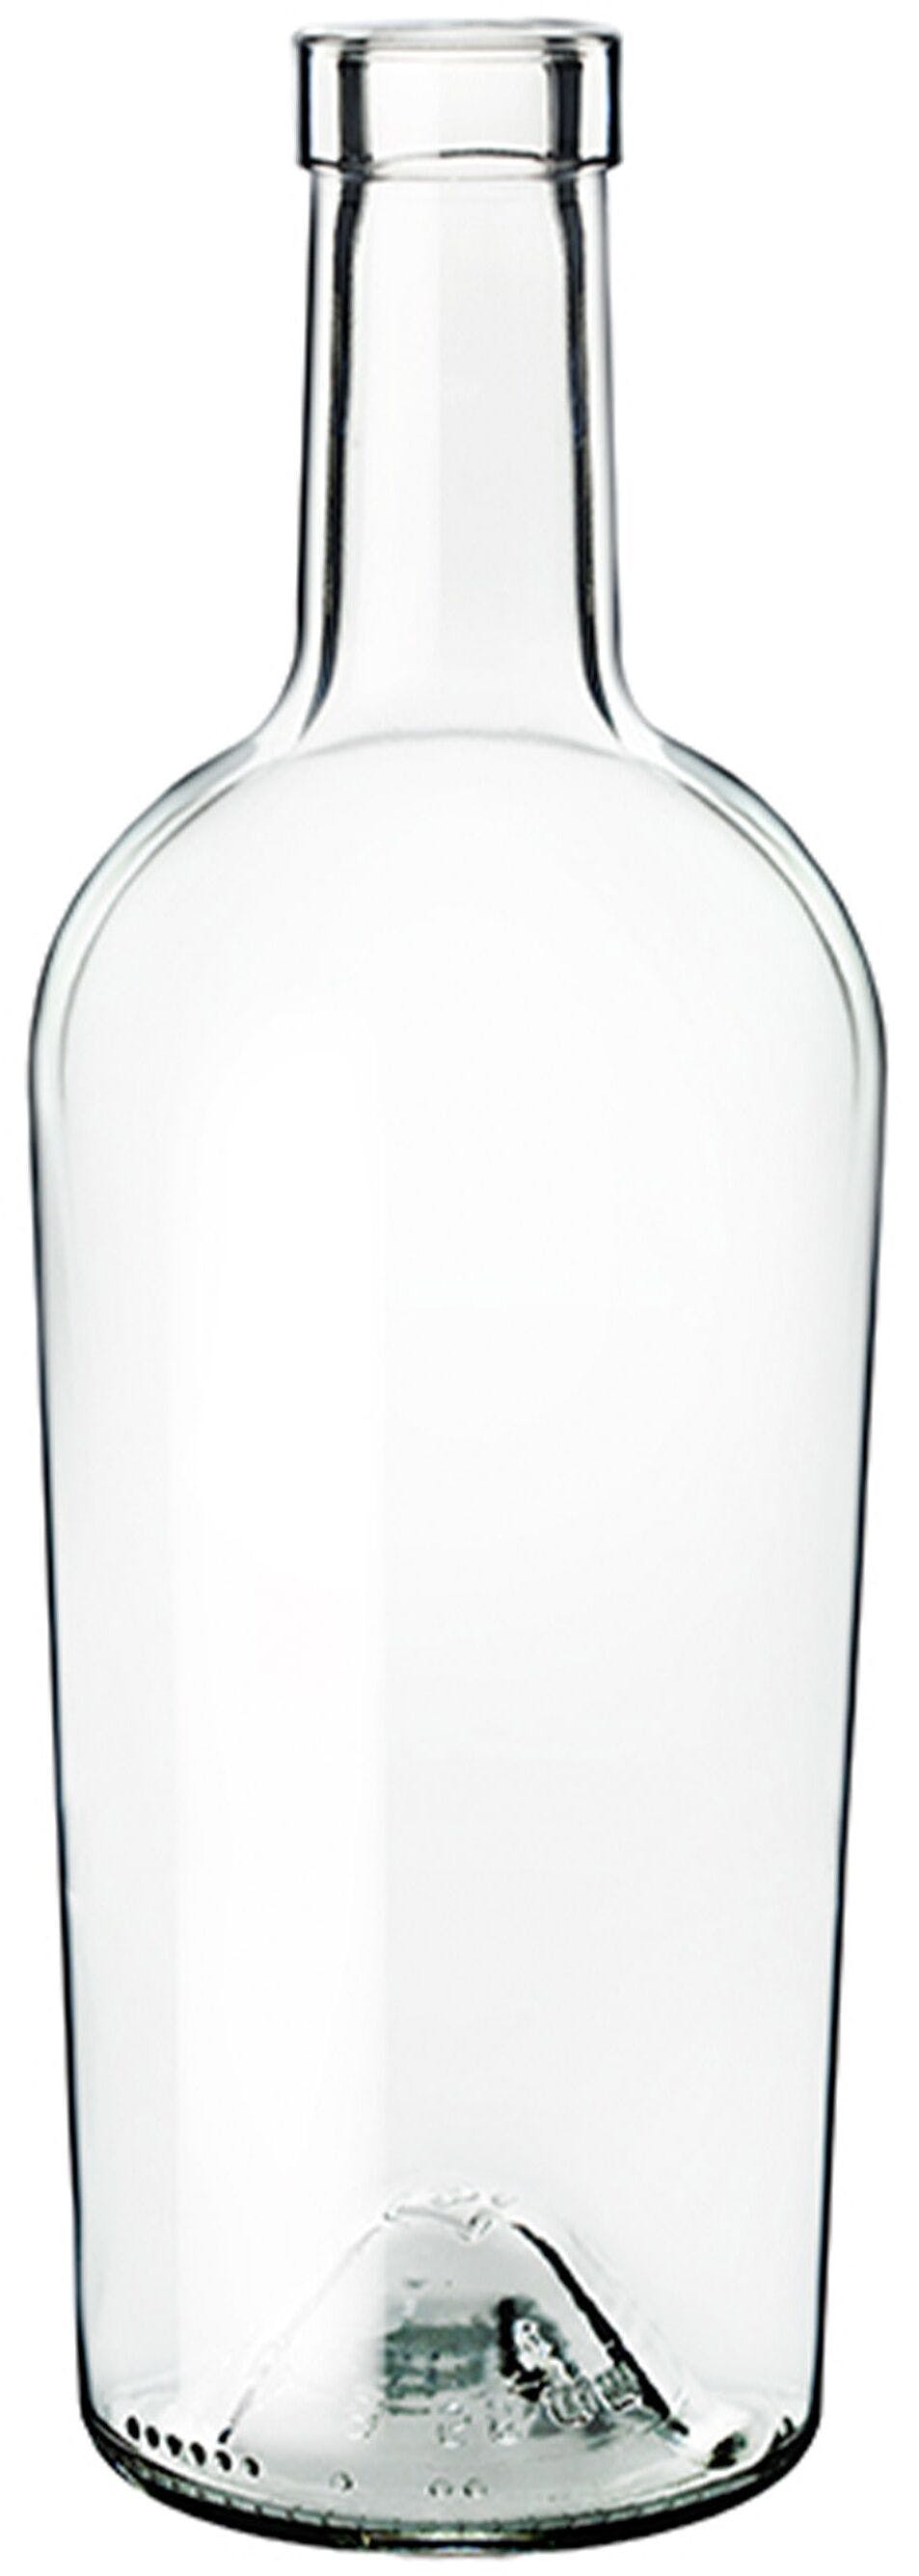 Flasche Bordeaux   REGINE ALLEGE' 500 ml BG-Korken